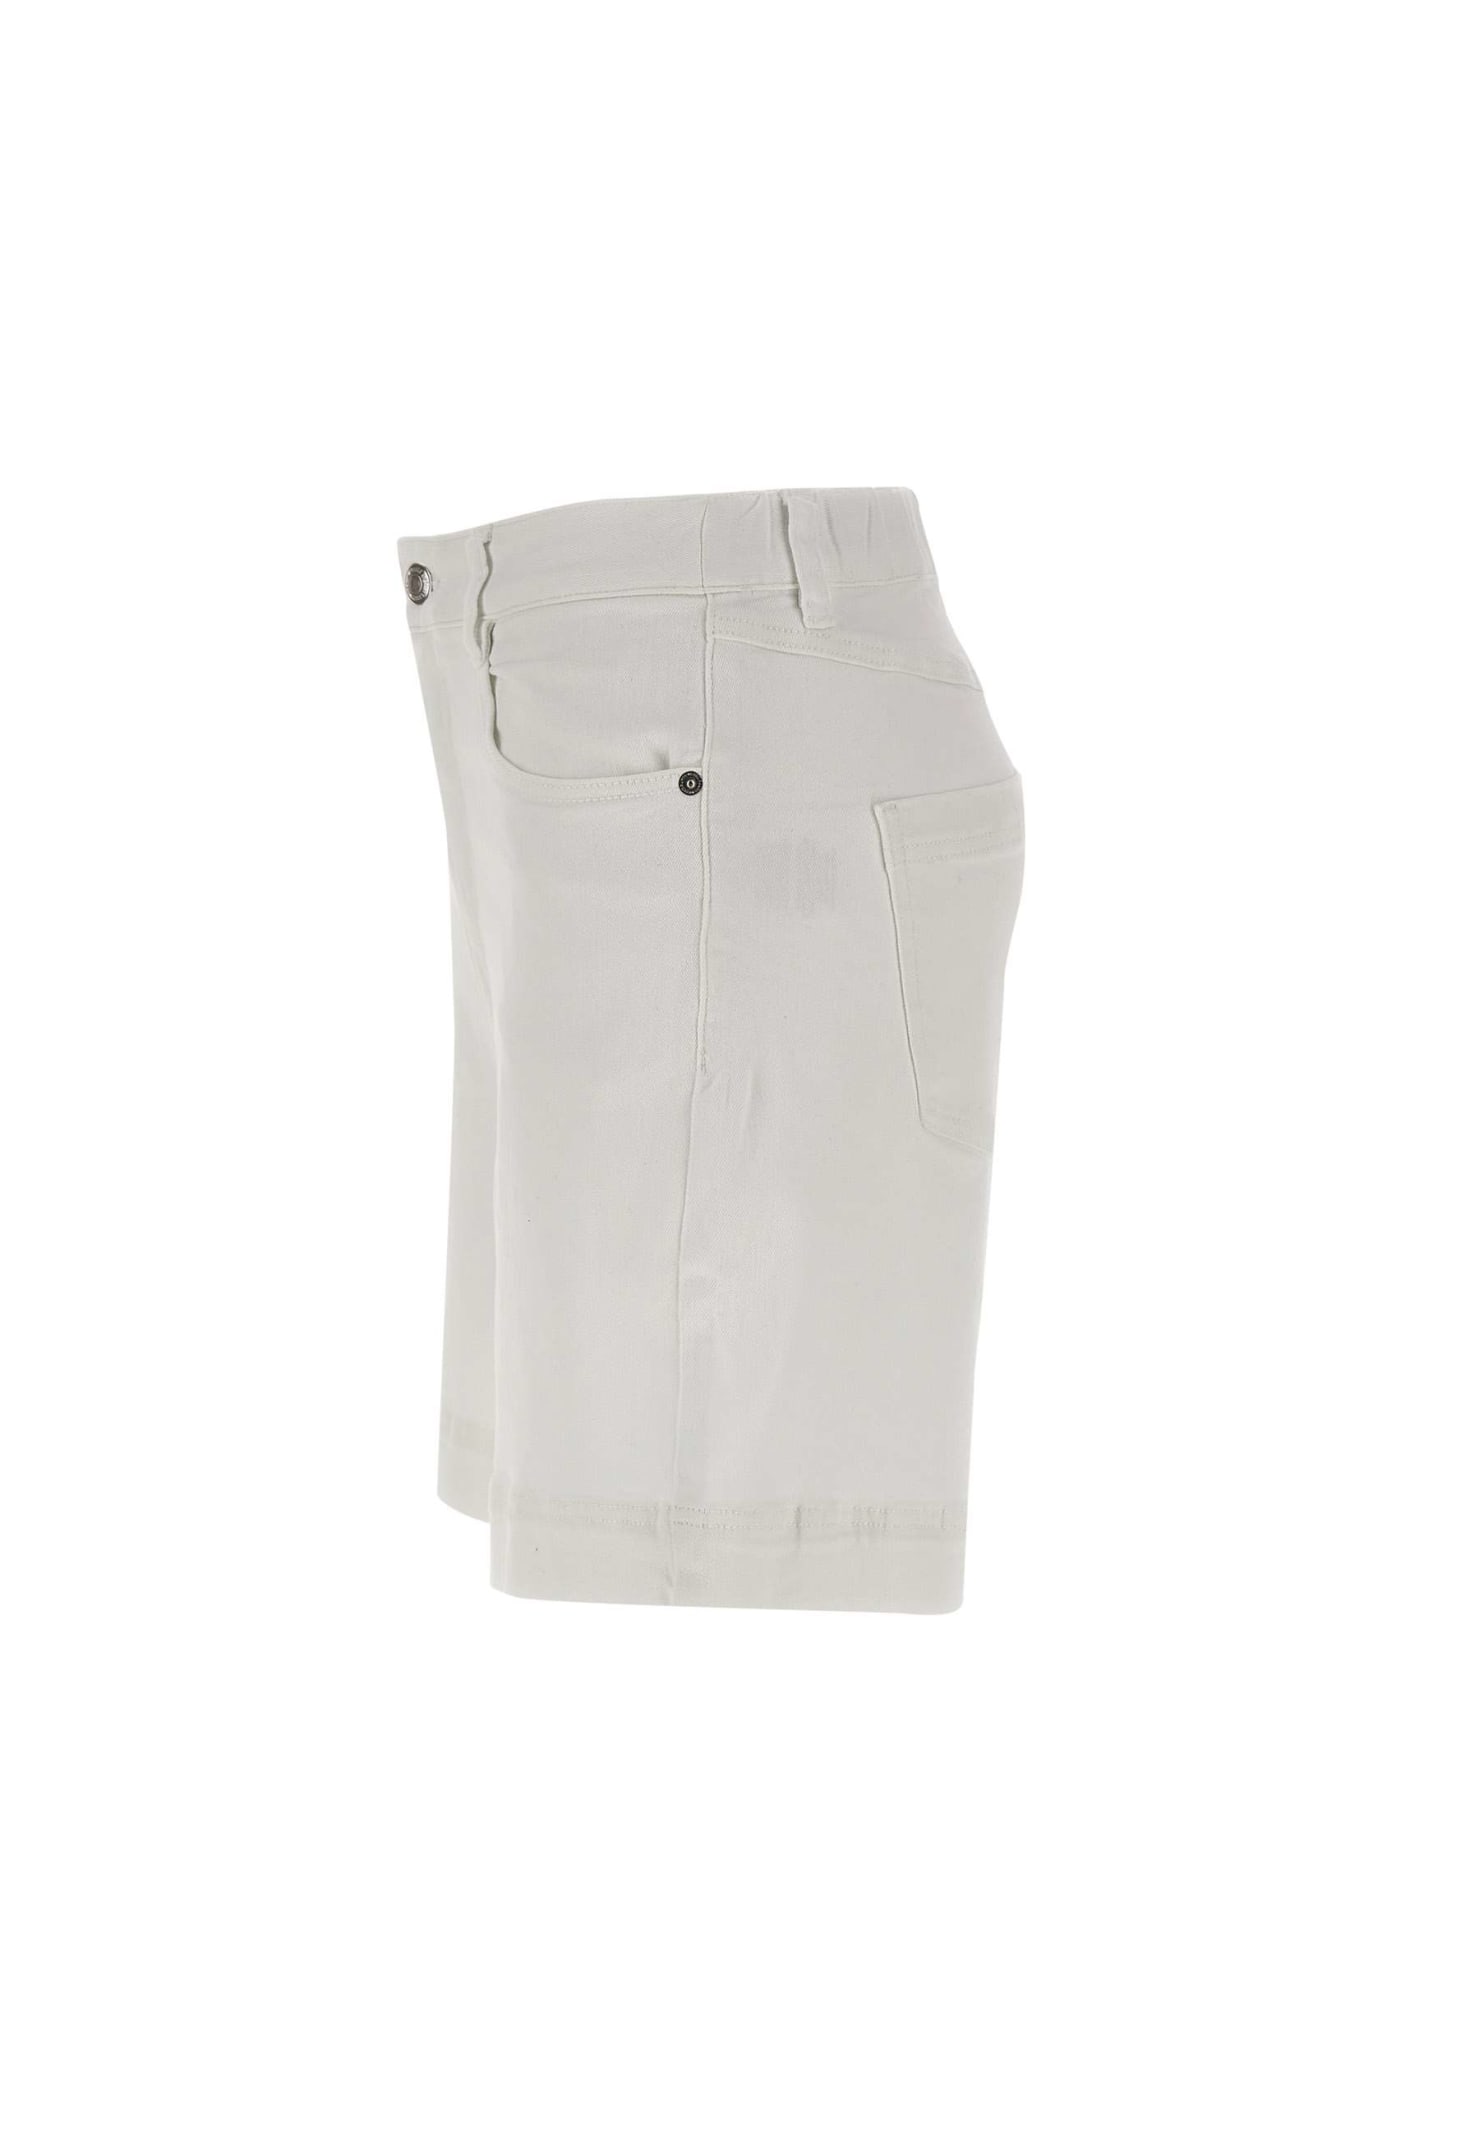 Shop Sun 68 Cotton Shorts In White